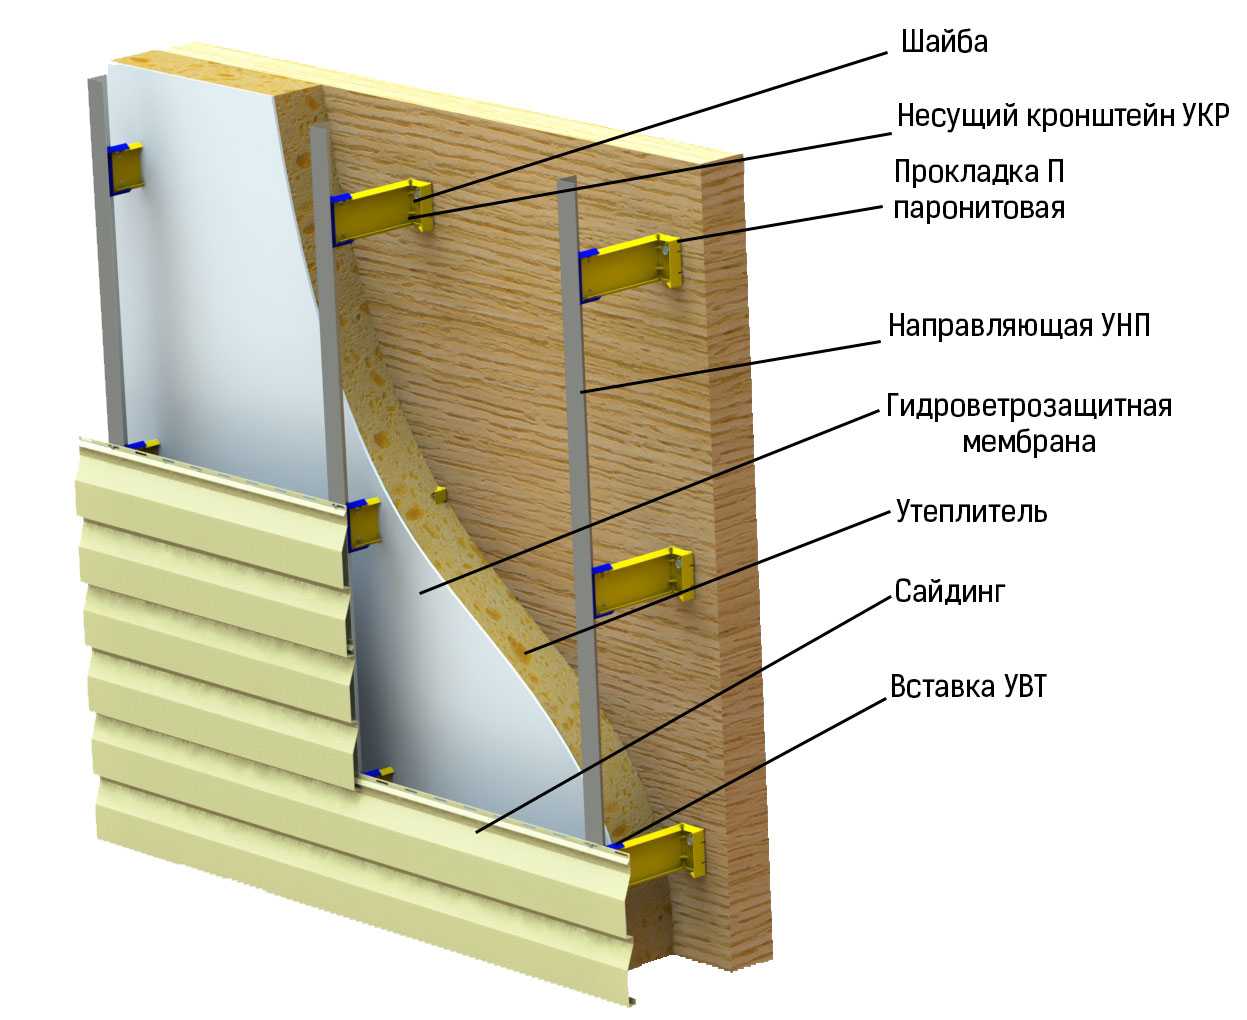 Сайдинг для внутренней отделки потолка, стен: применение панелей в ванной комнате, кухне (фото, видео)